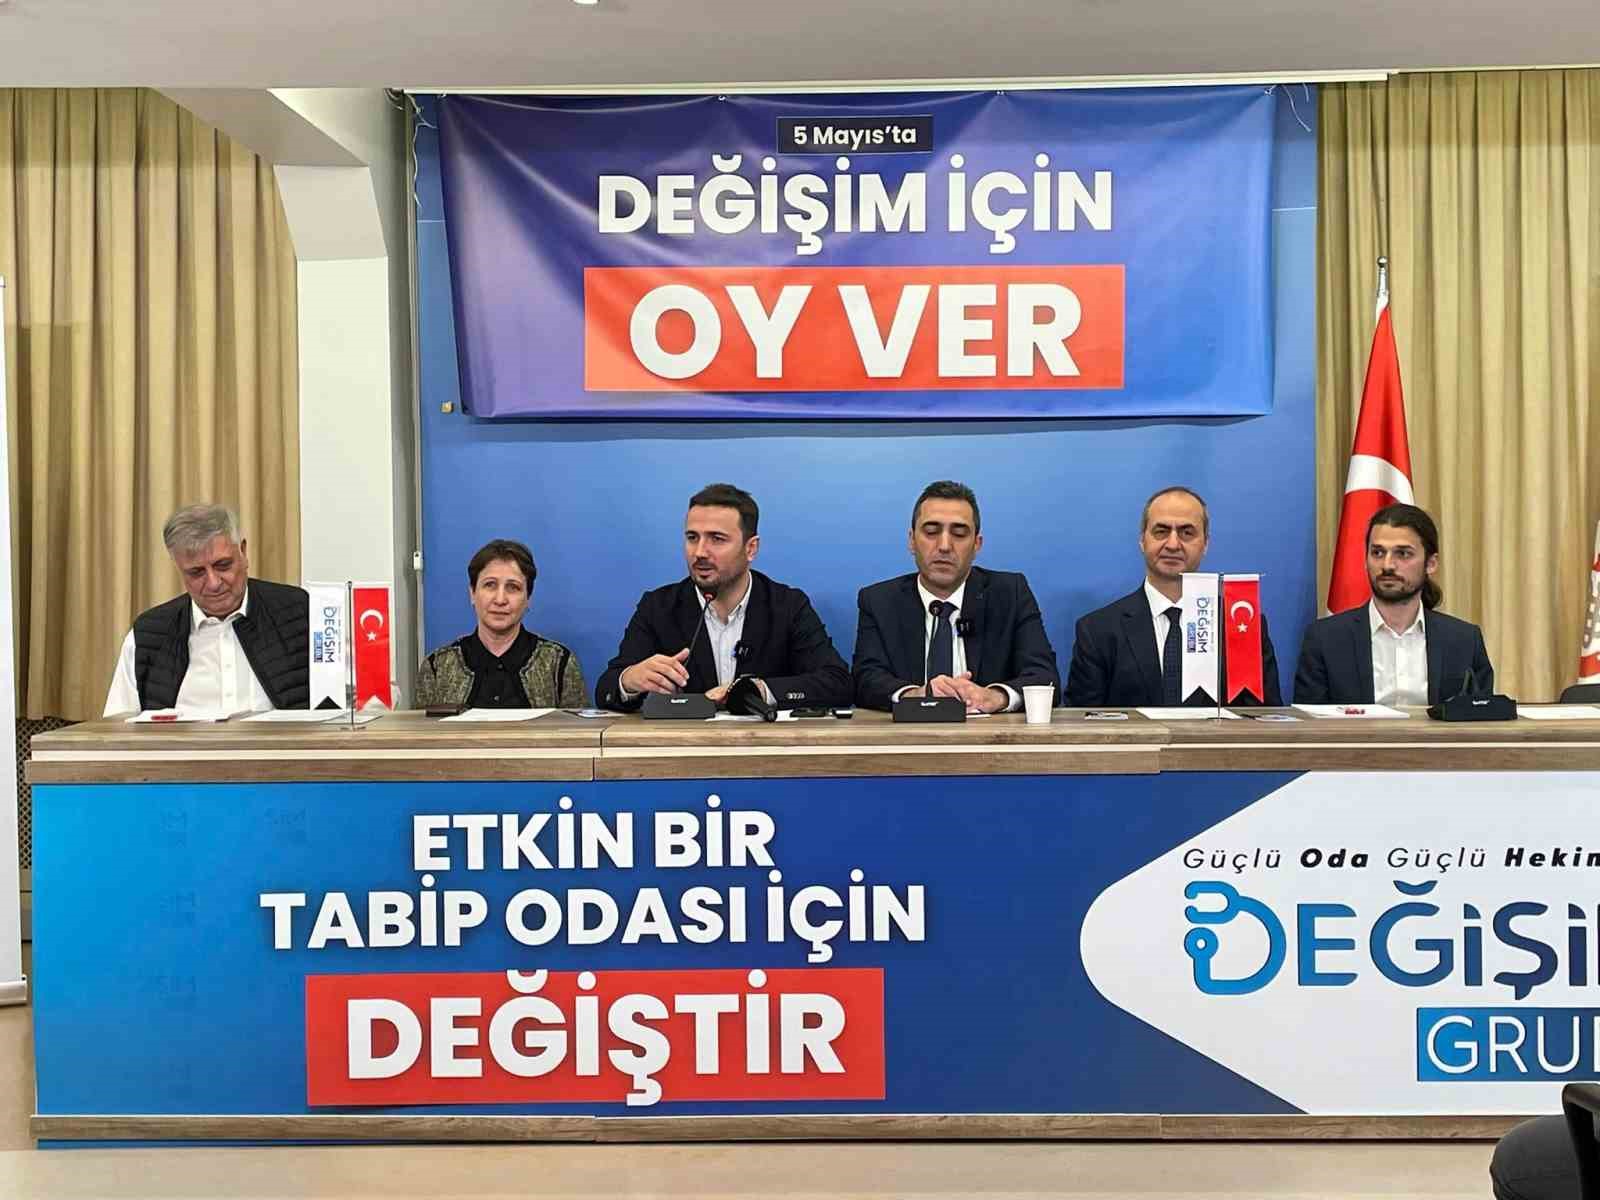 İstanbul Tabip Odası seçim öncesi aday kadrosunu açıkladı
